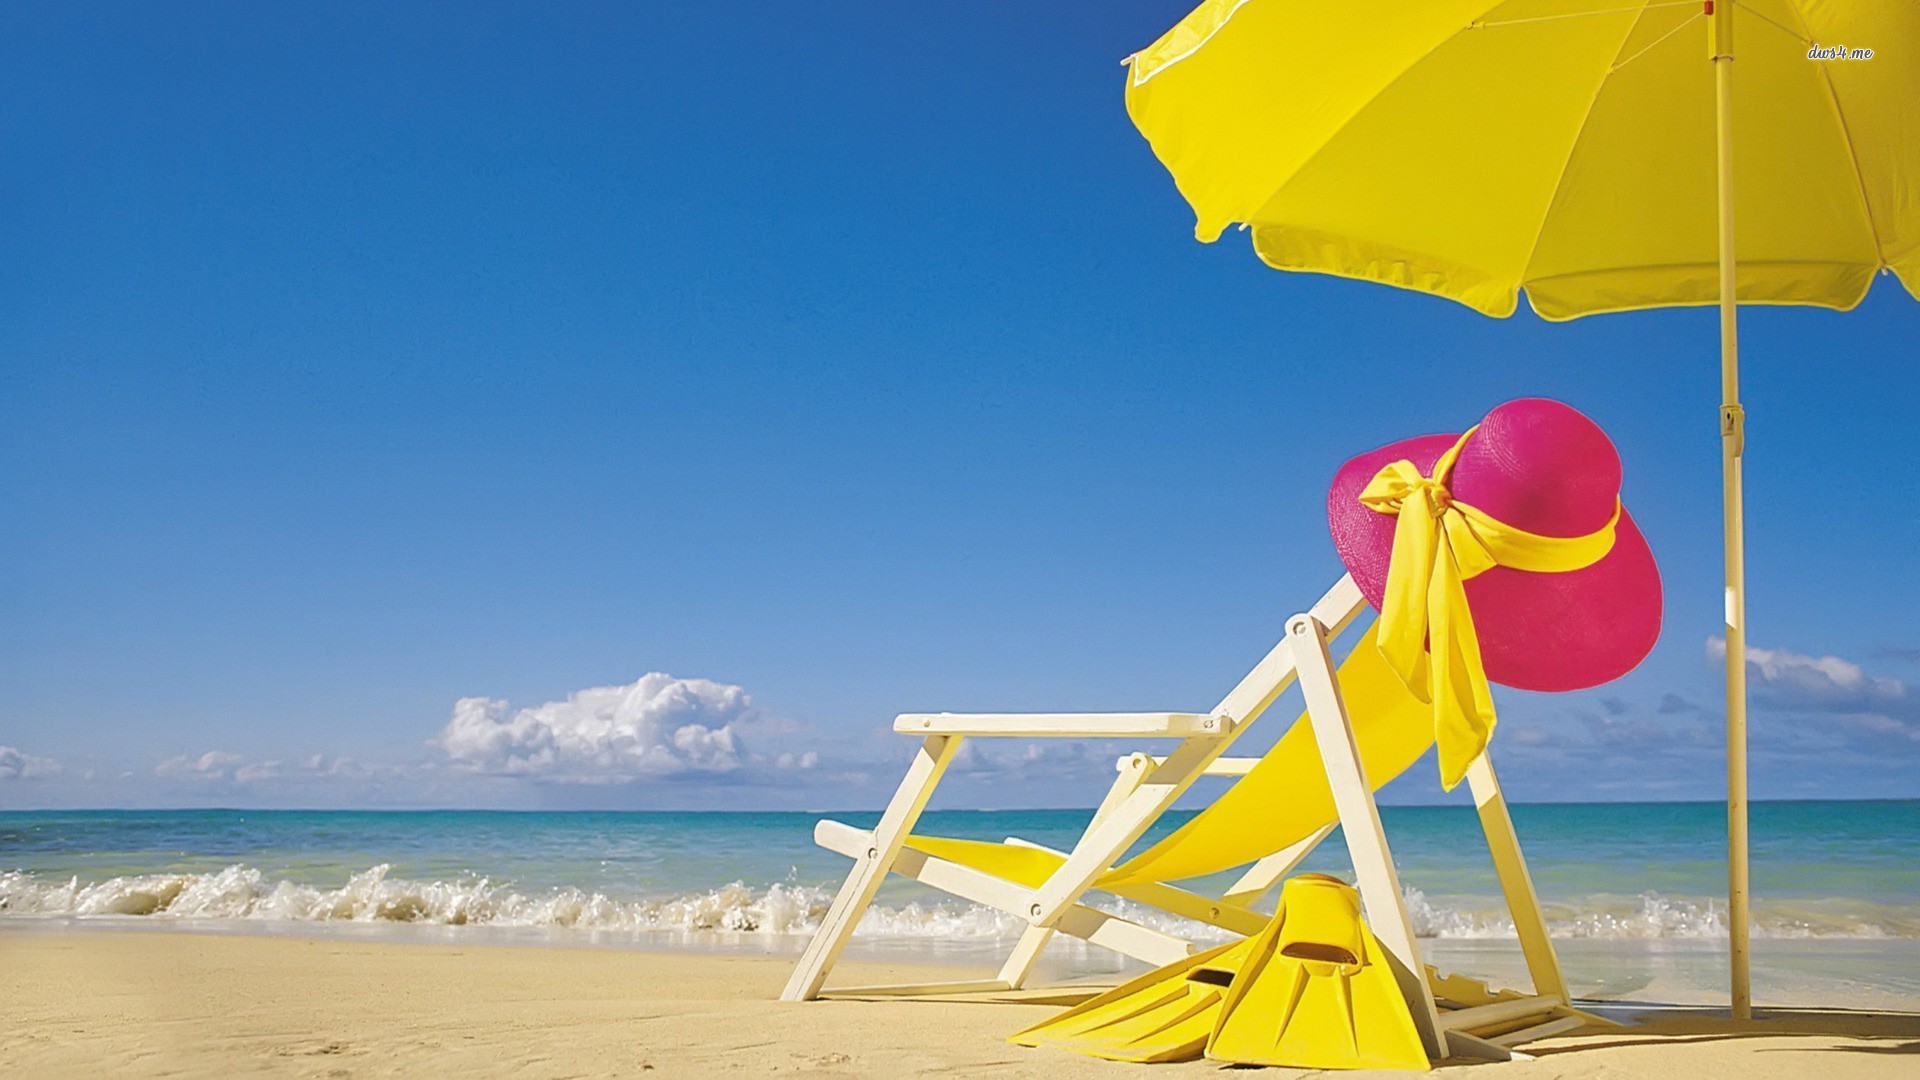 summer beach widescreen wallpapers | Desktop Backgrounds for Free ...